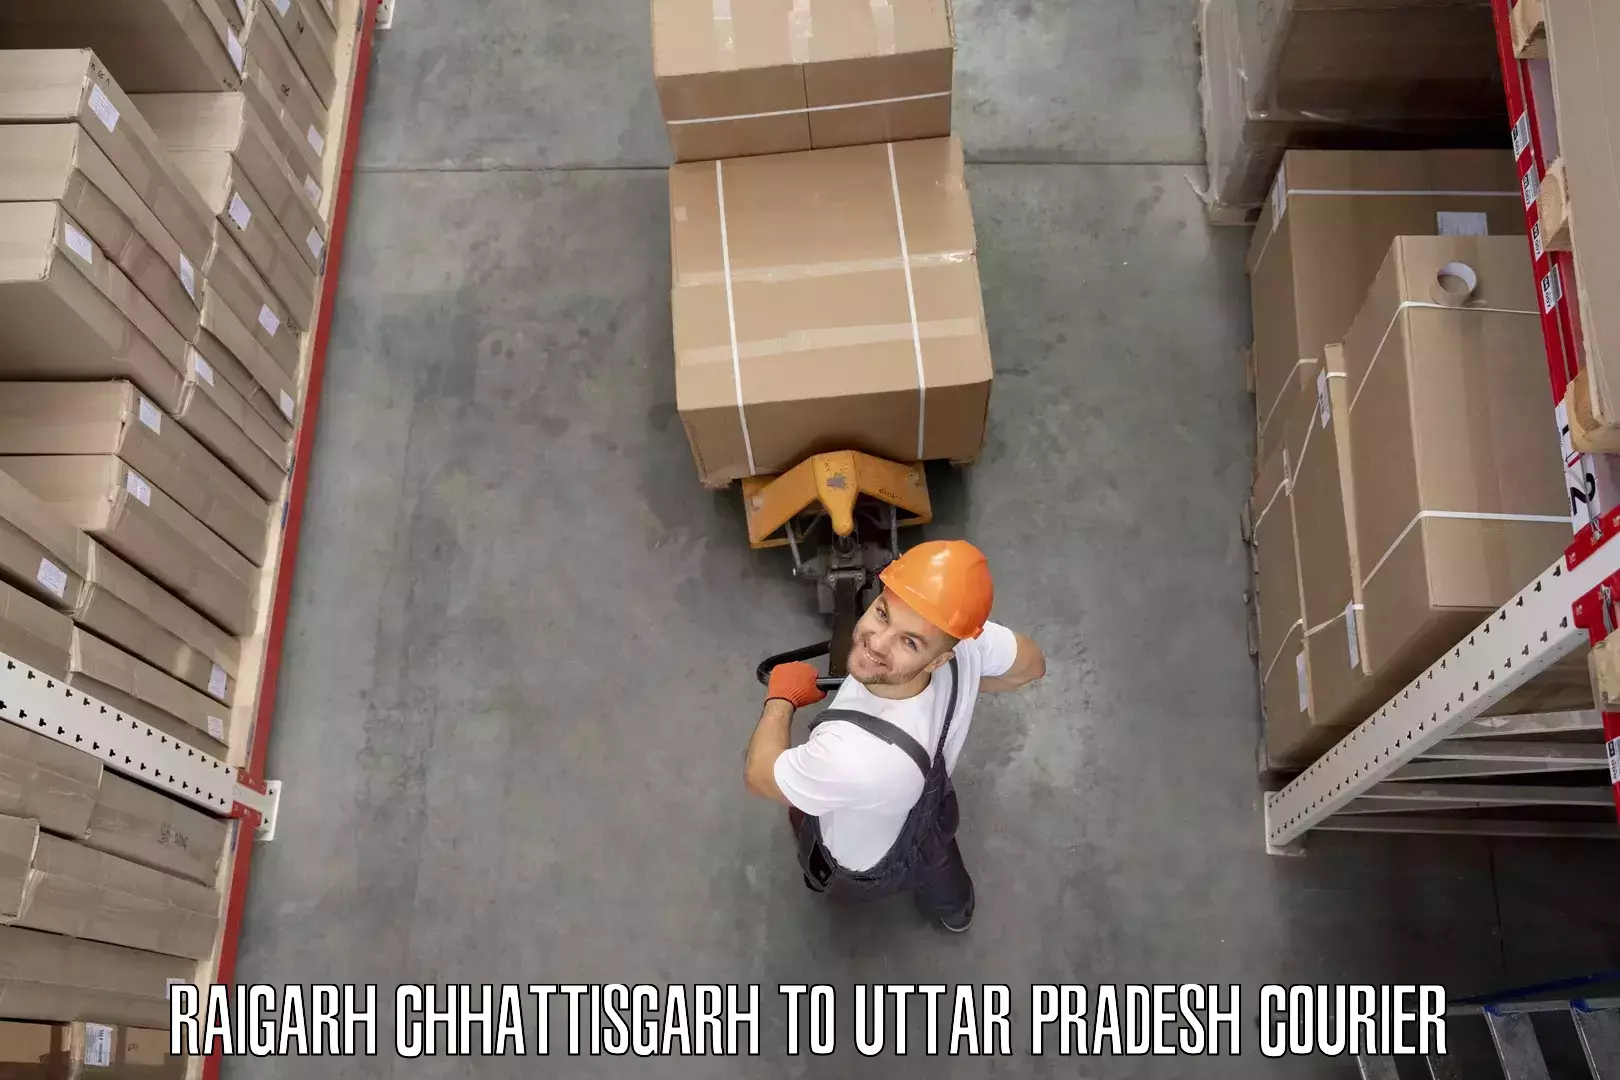 Local furniture movers Raigarh Chhattisgarh to Mainpuri